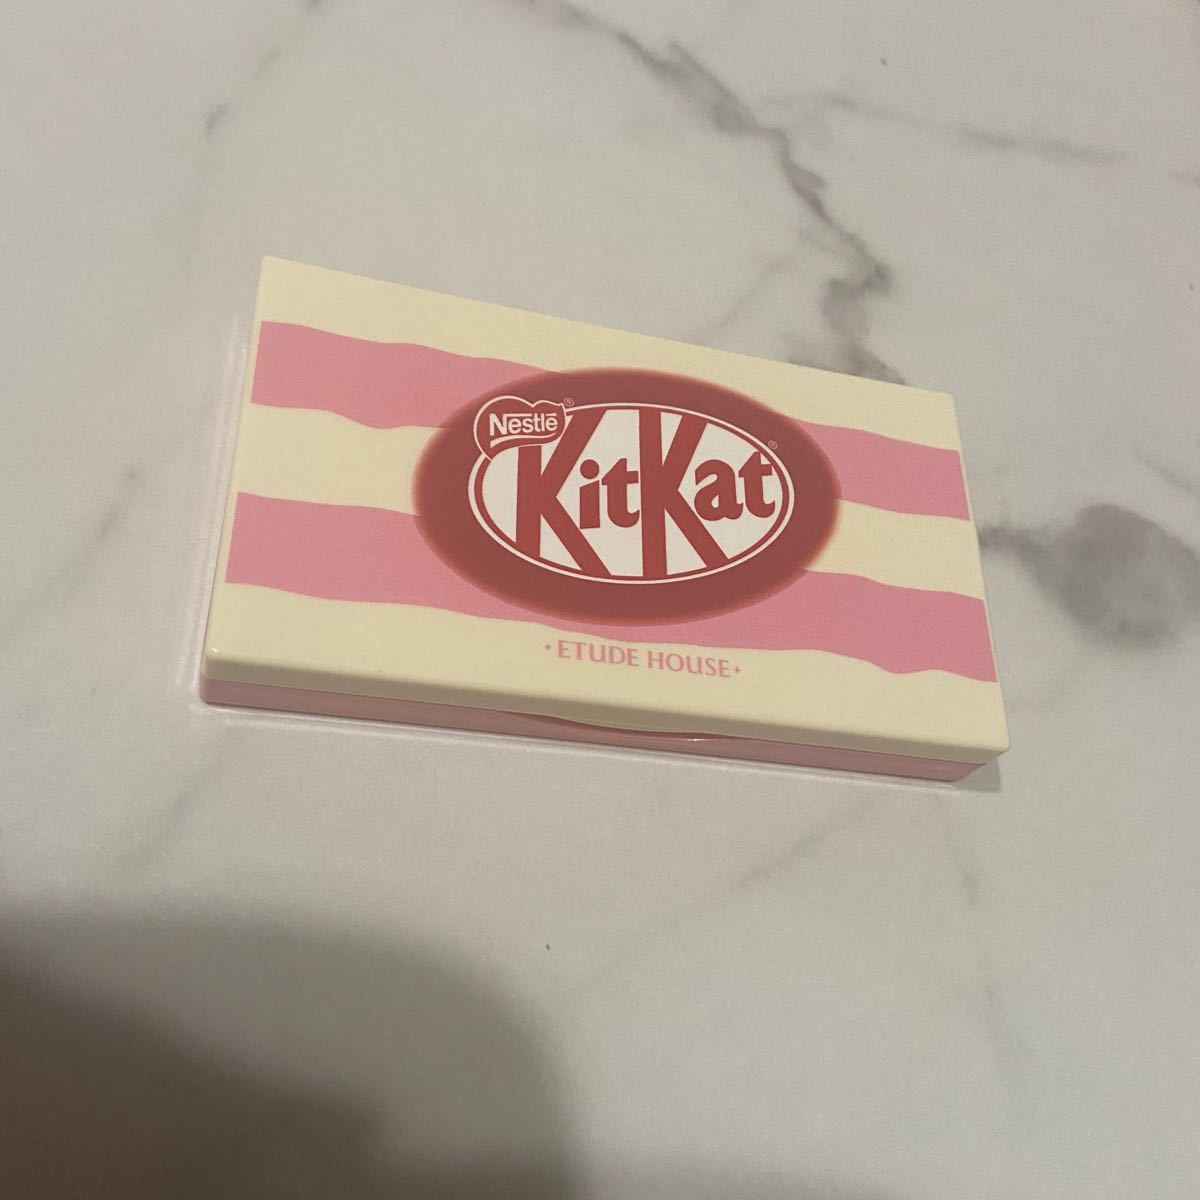 ETUDE HOUSE KitKat アイシャドウ プレイカラーアイズミニ ストロベリーティラミス